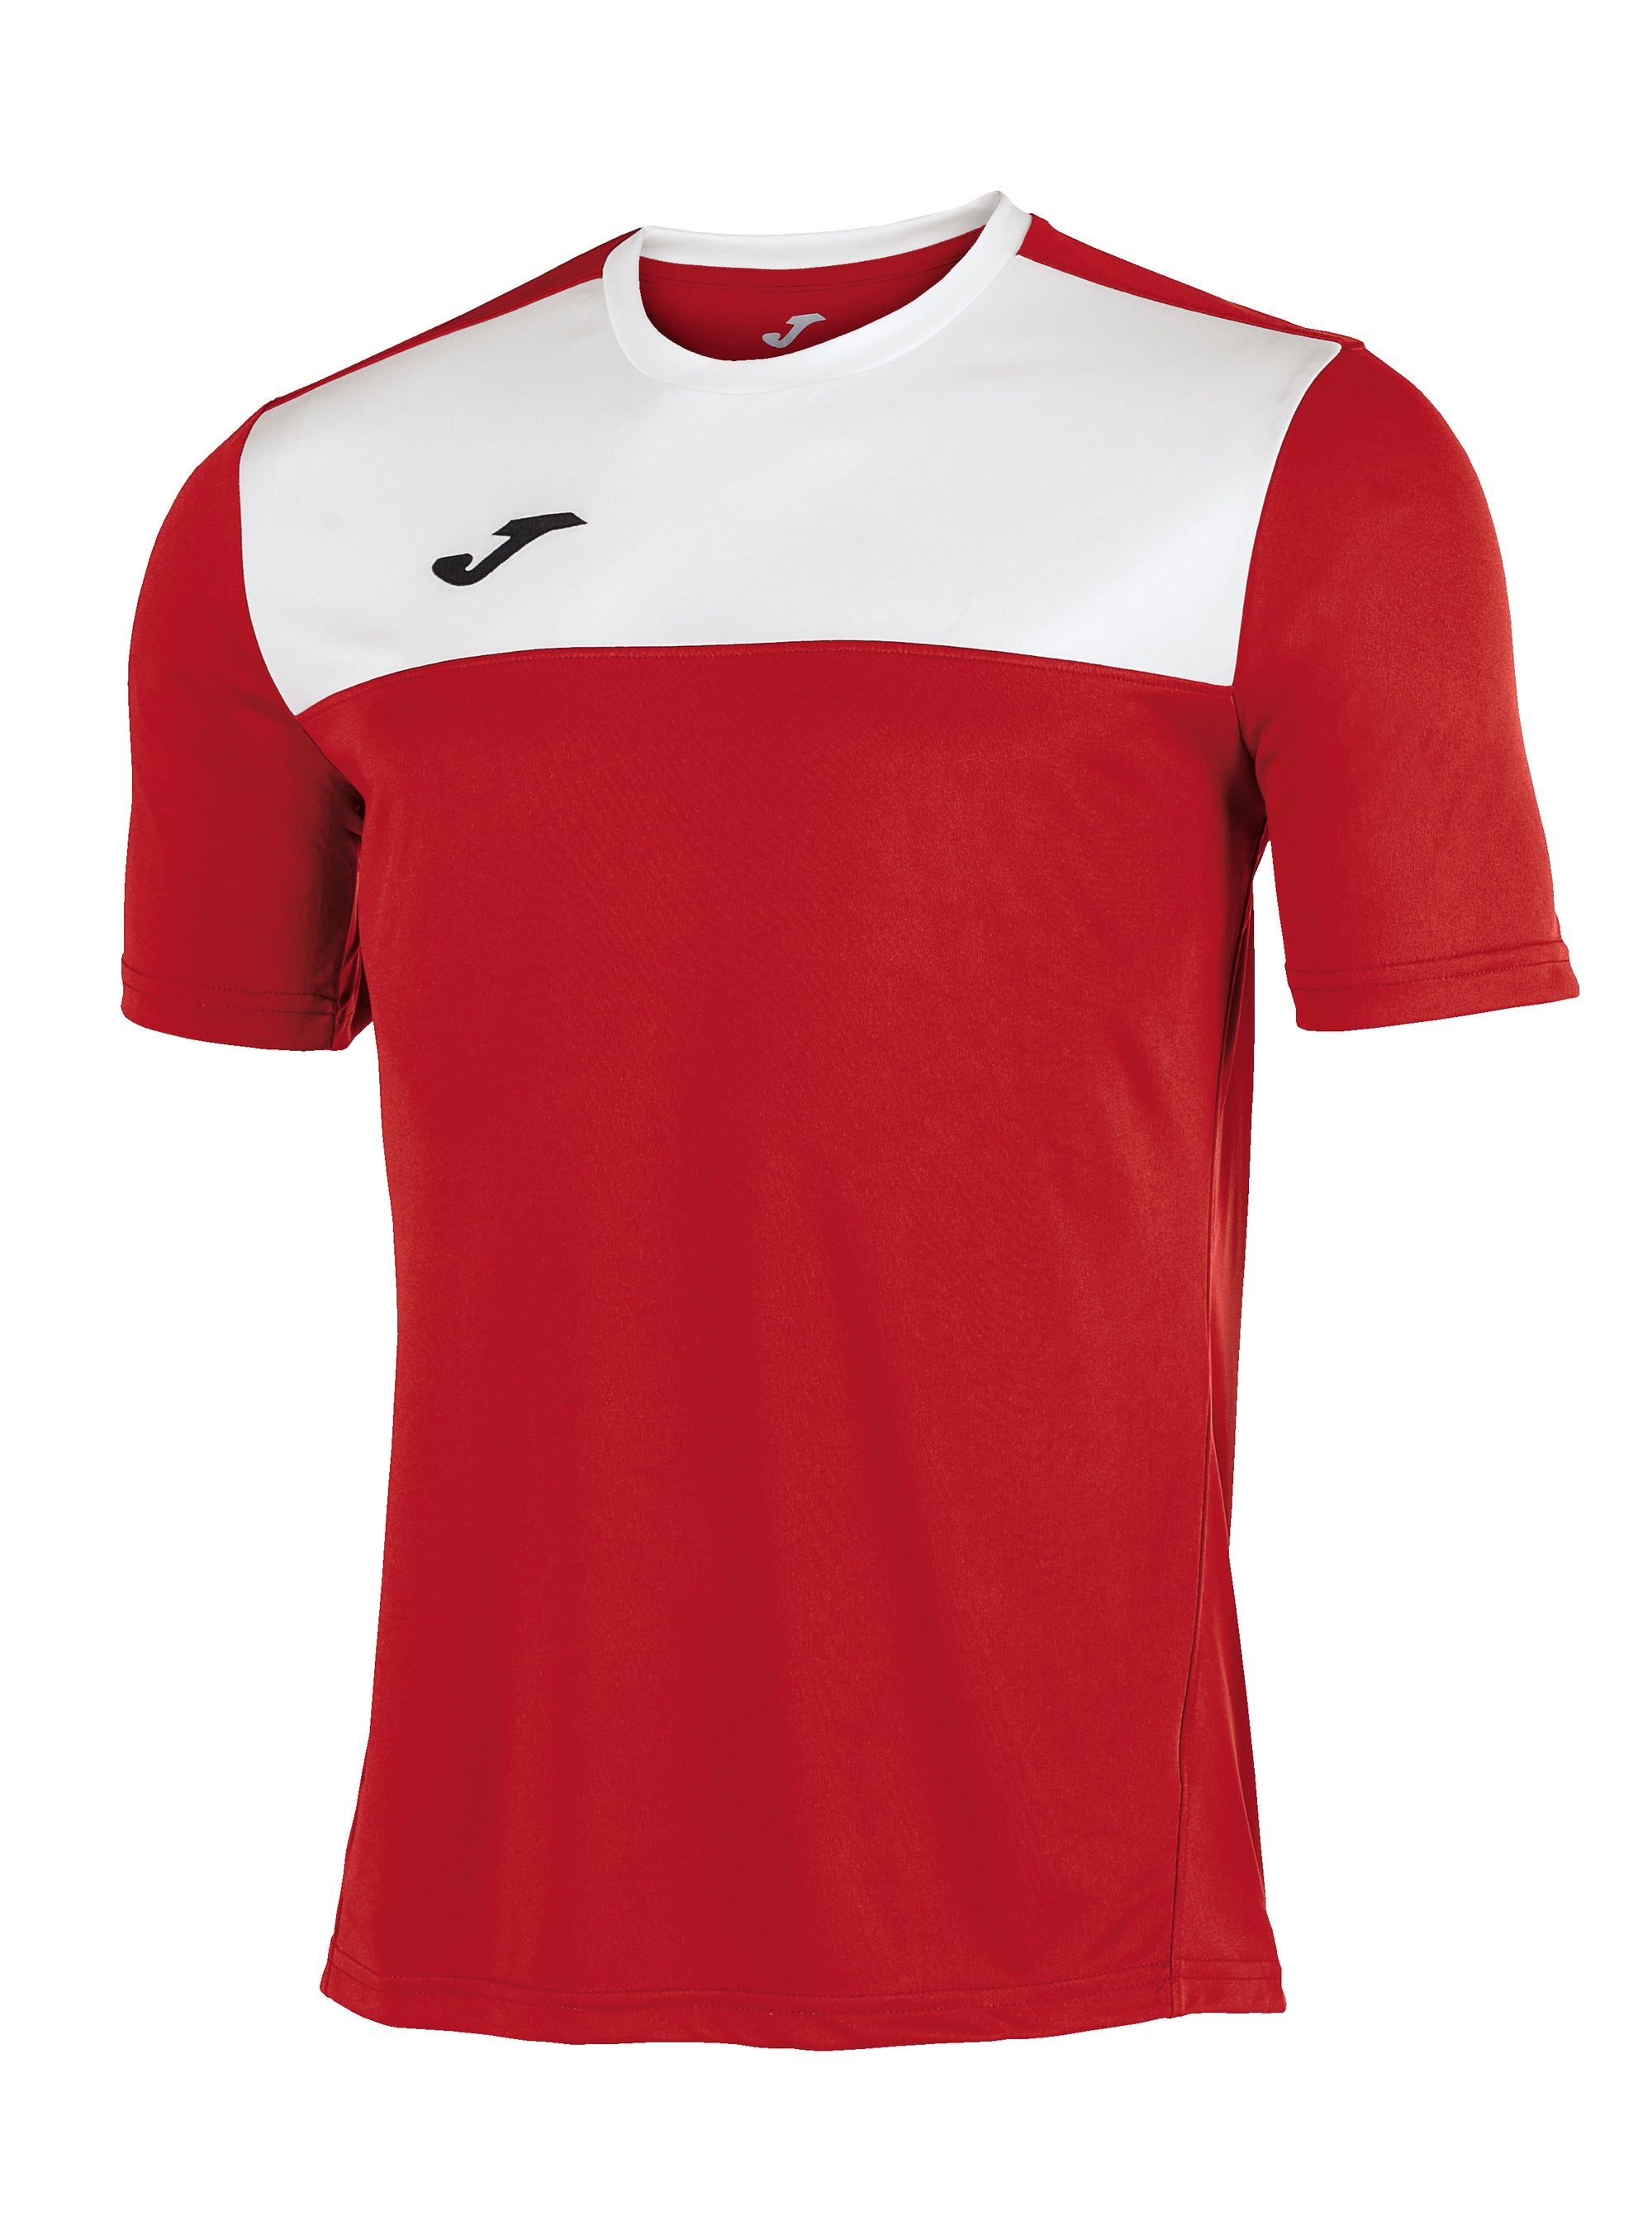 Joma Winner Short Sleeved T-Shirt - Red/White